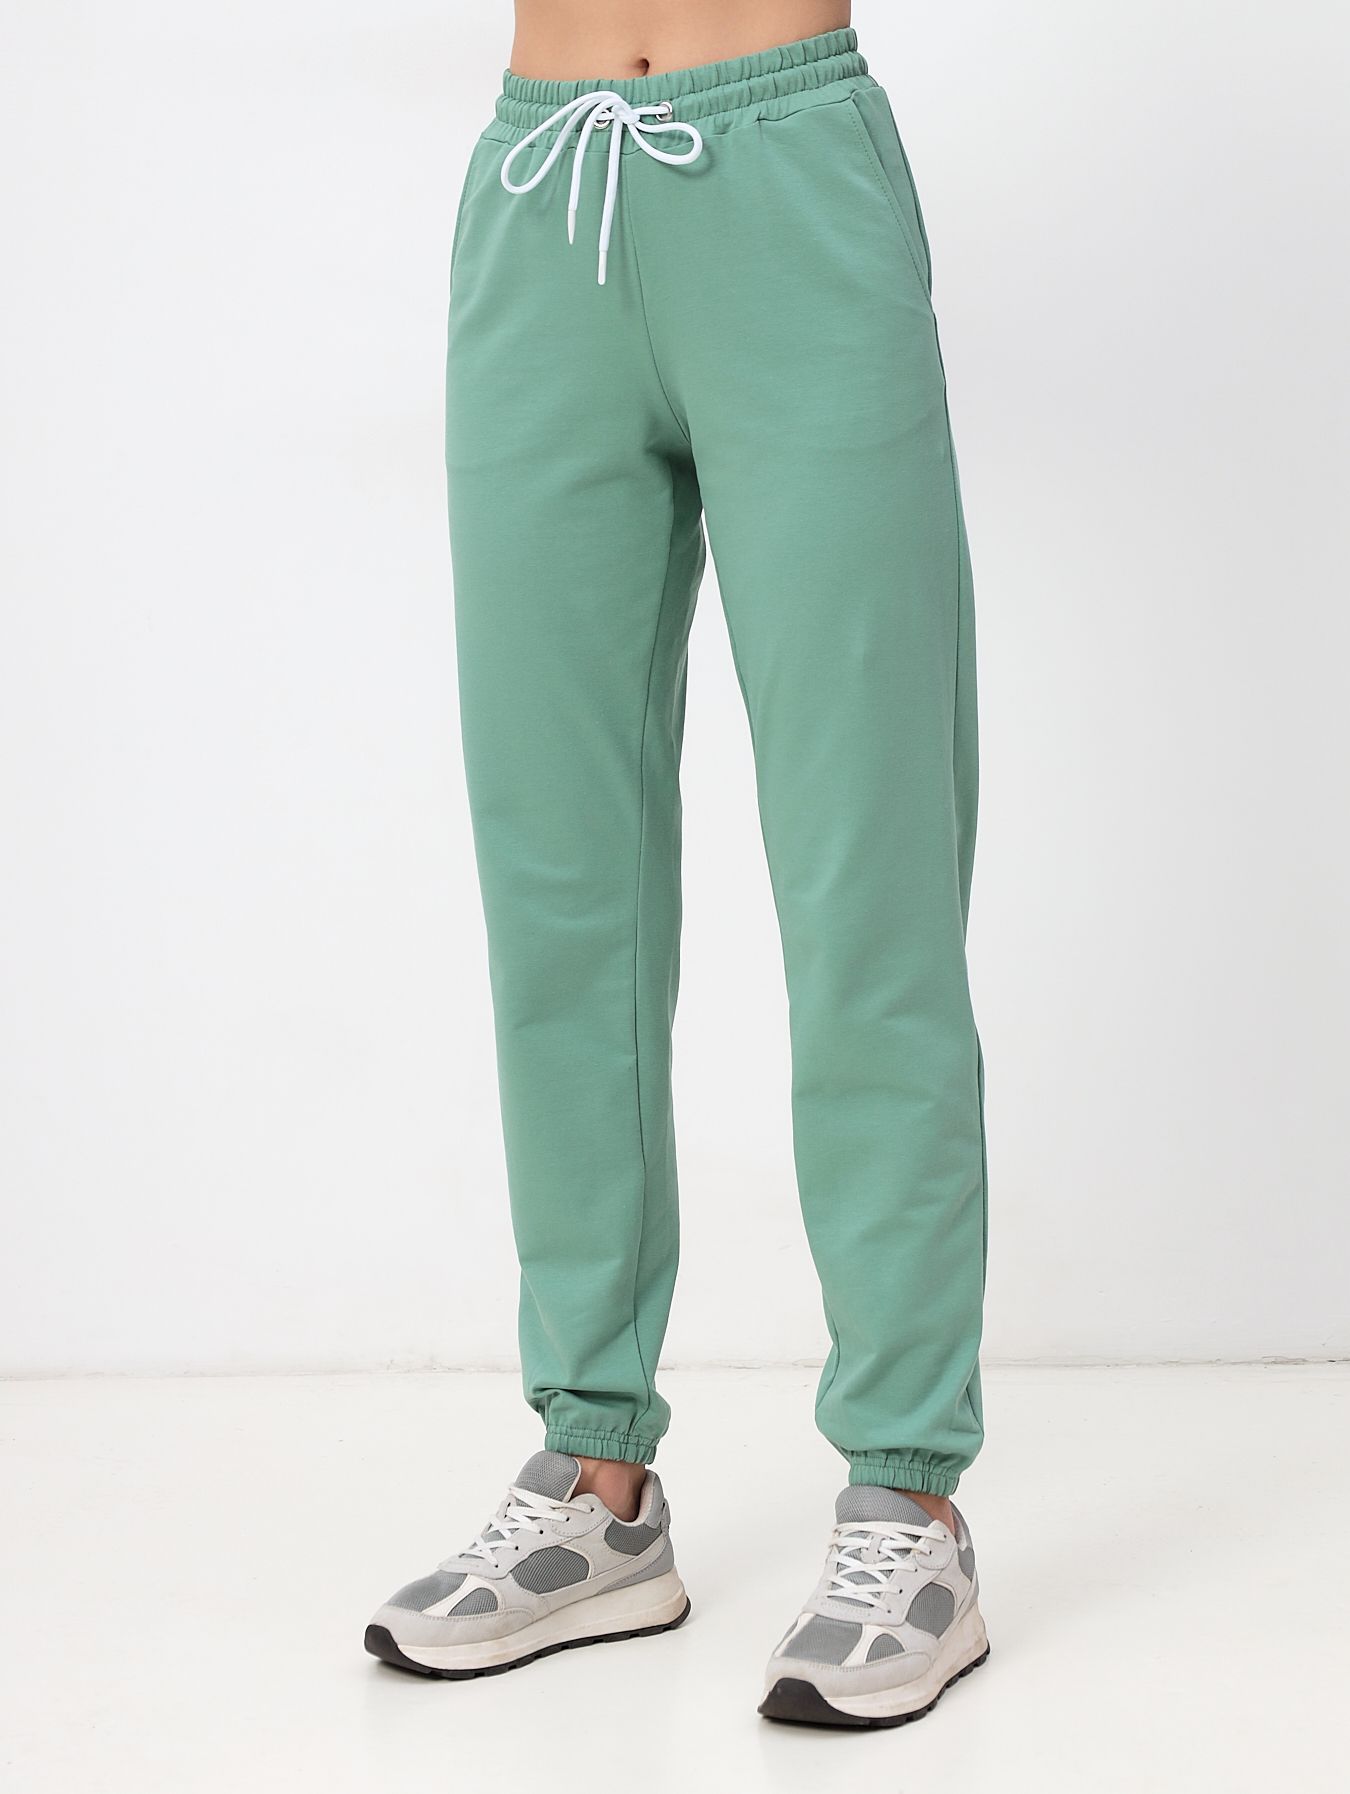 Спортивные брюки женские MOM №1 3170 зеленые 50 RU